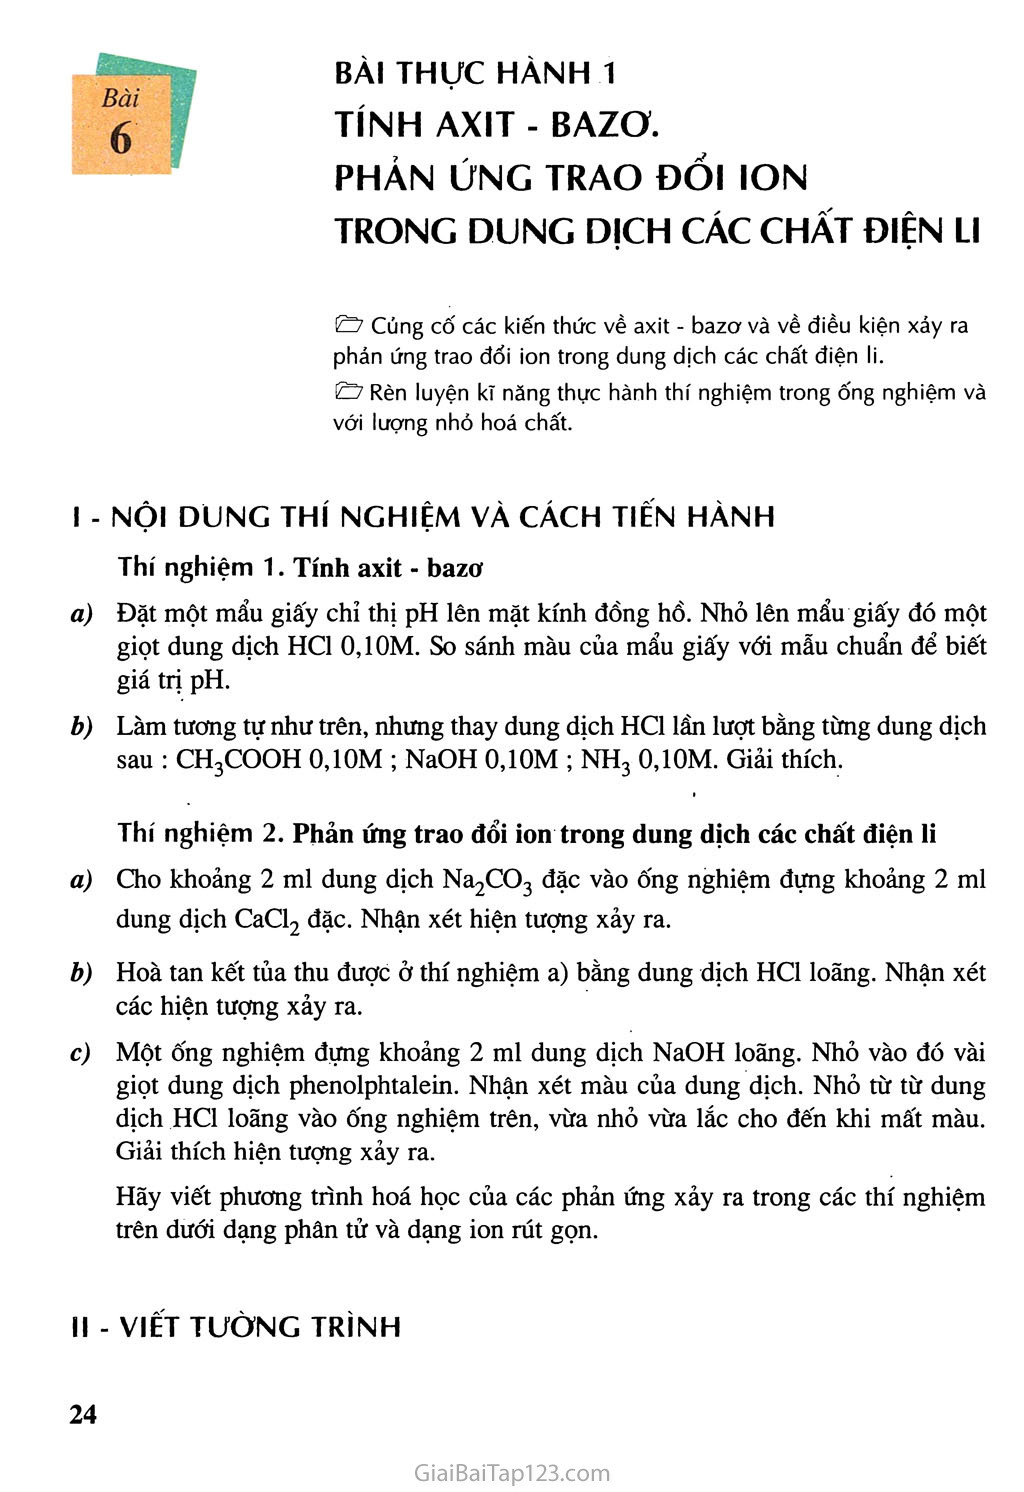 Bài 6: Bài thực hành 1: Tính axit - bazơ - Phản ứng trao đổi ion trong dung dịch các chất điện li trang 1